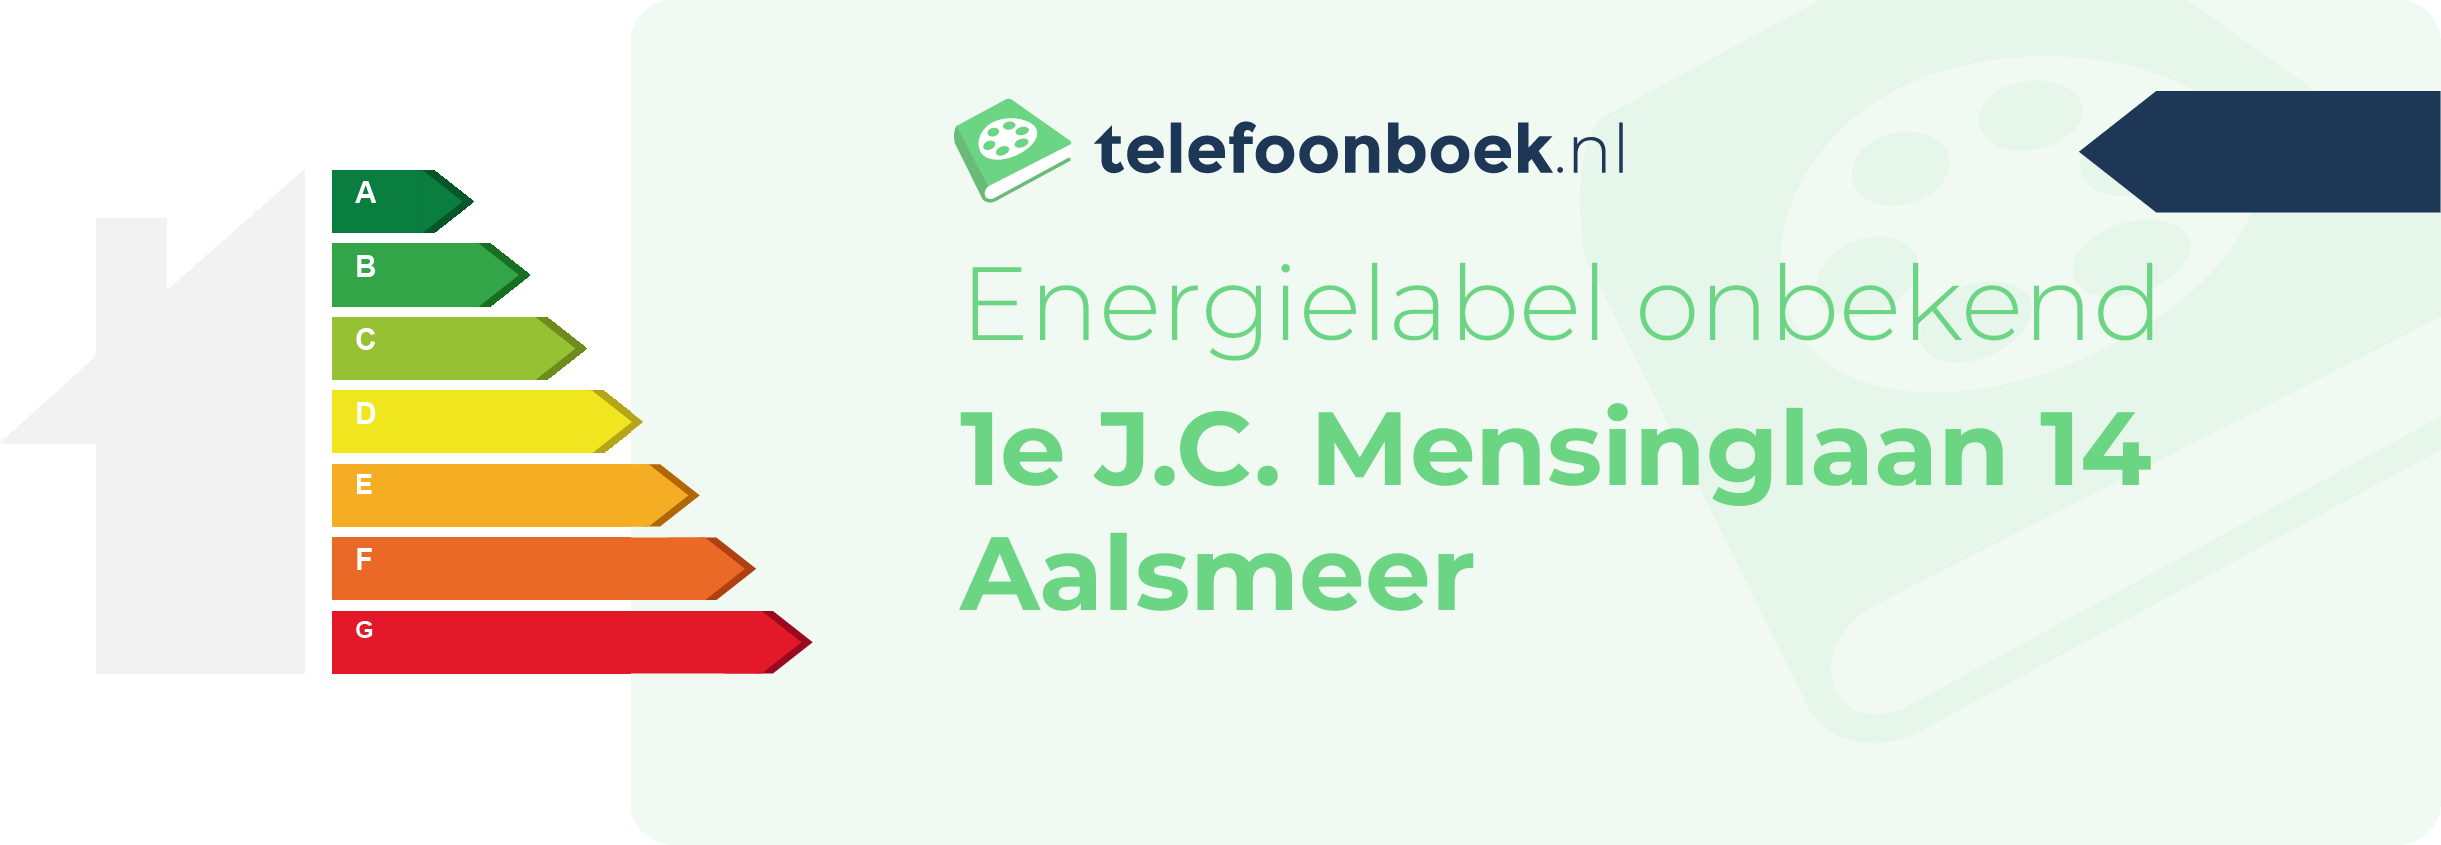 Energielabel 1e J.C. Mensinglaan 14 Aalsmeer